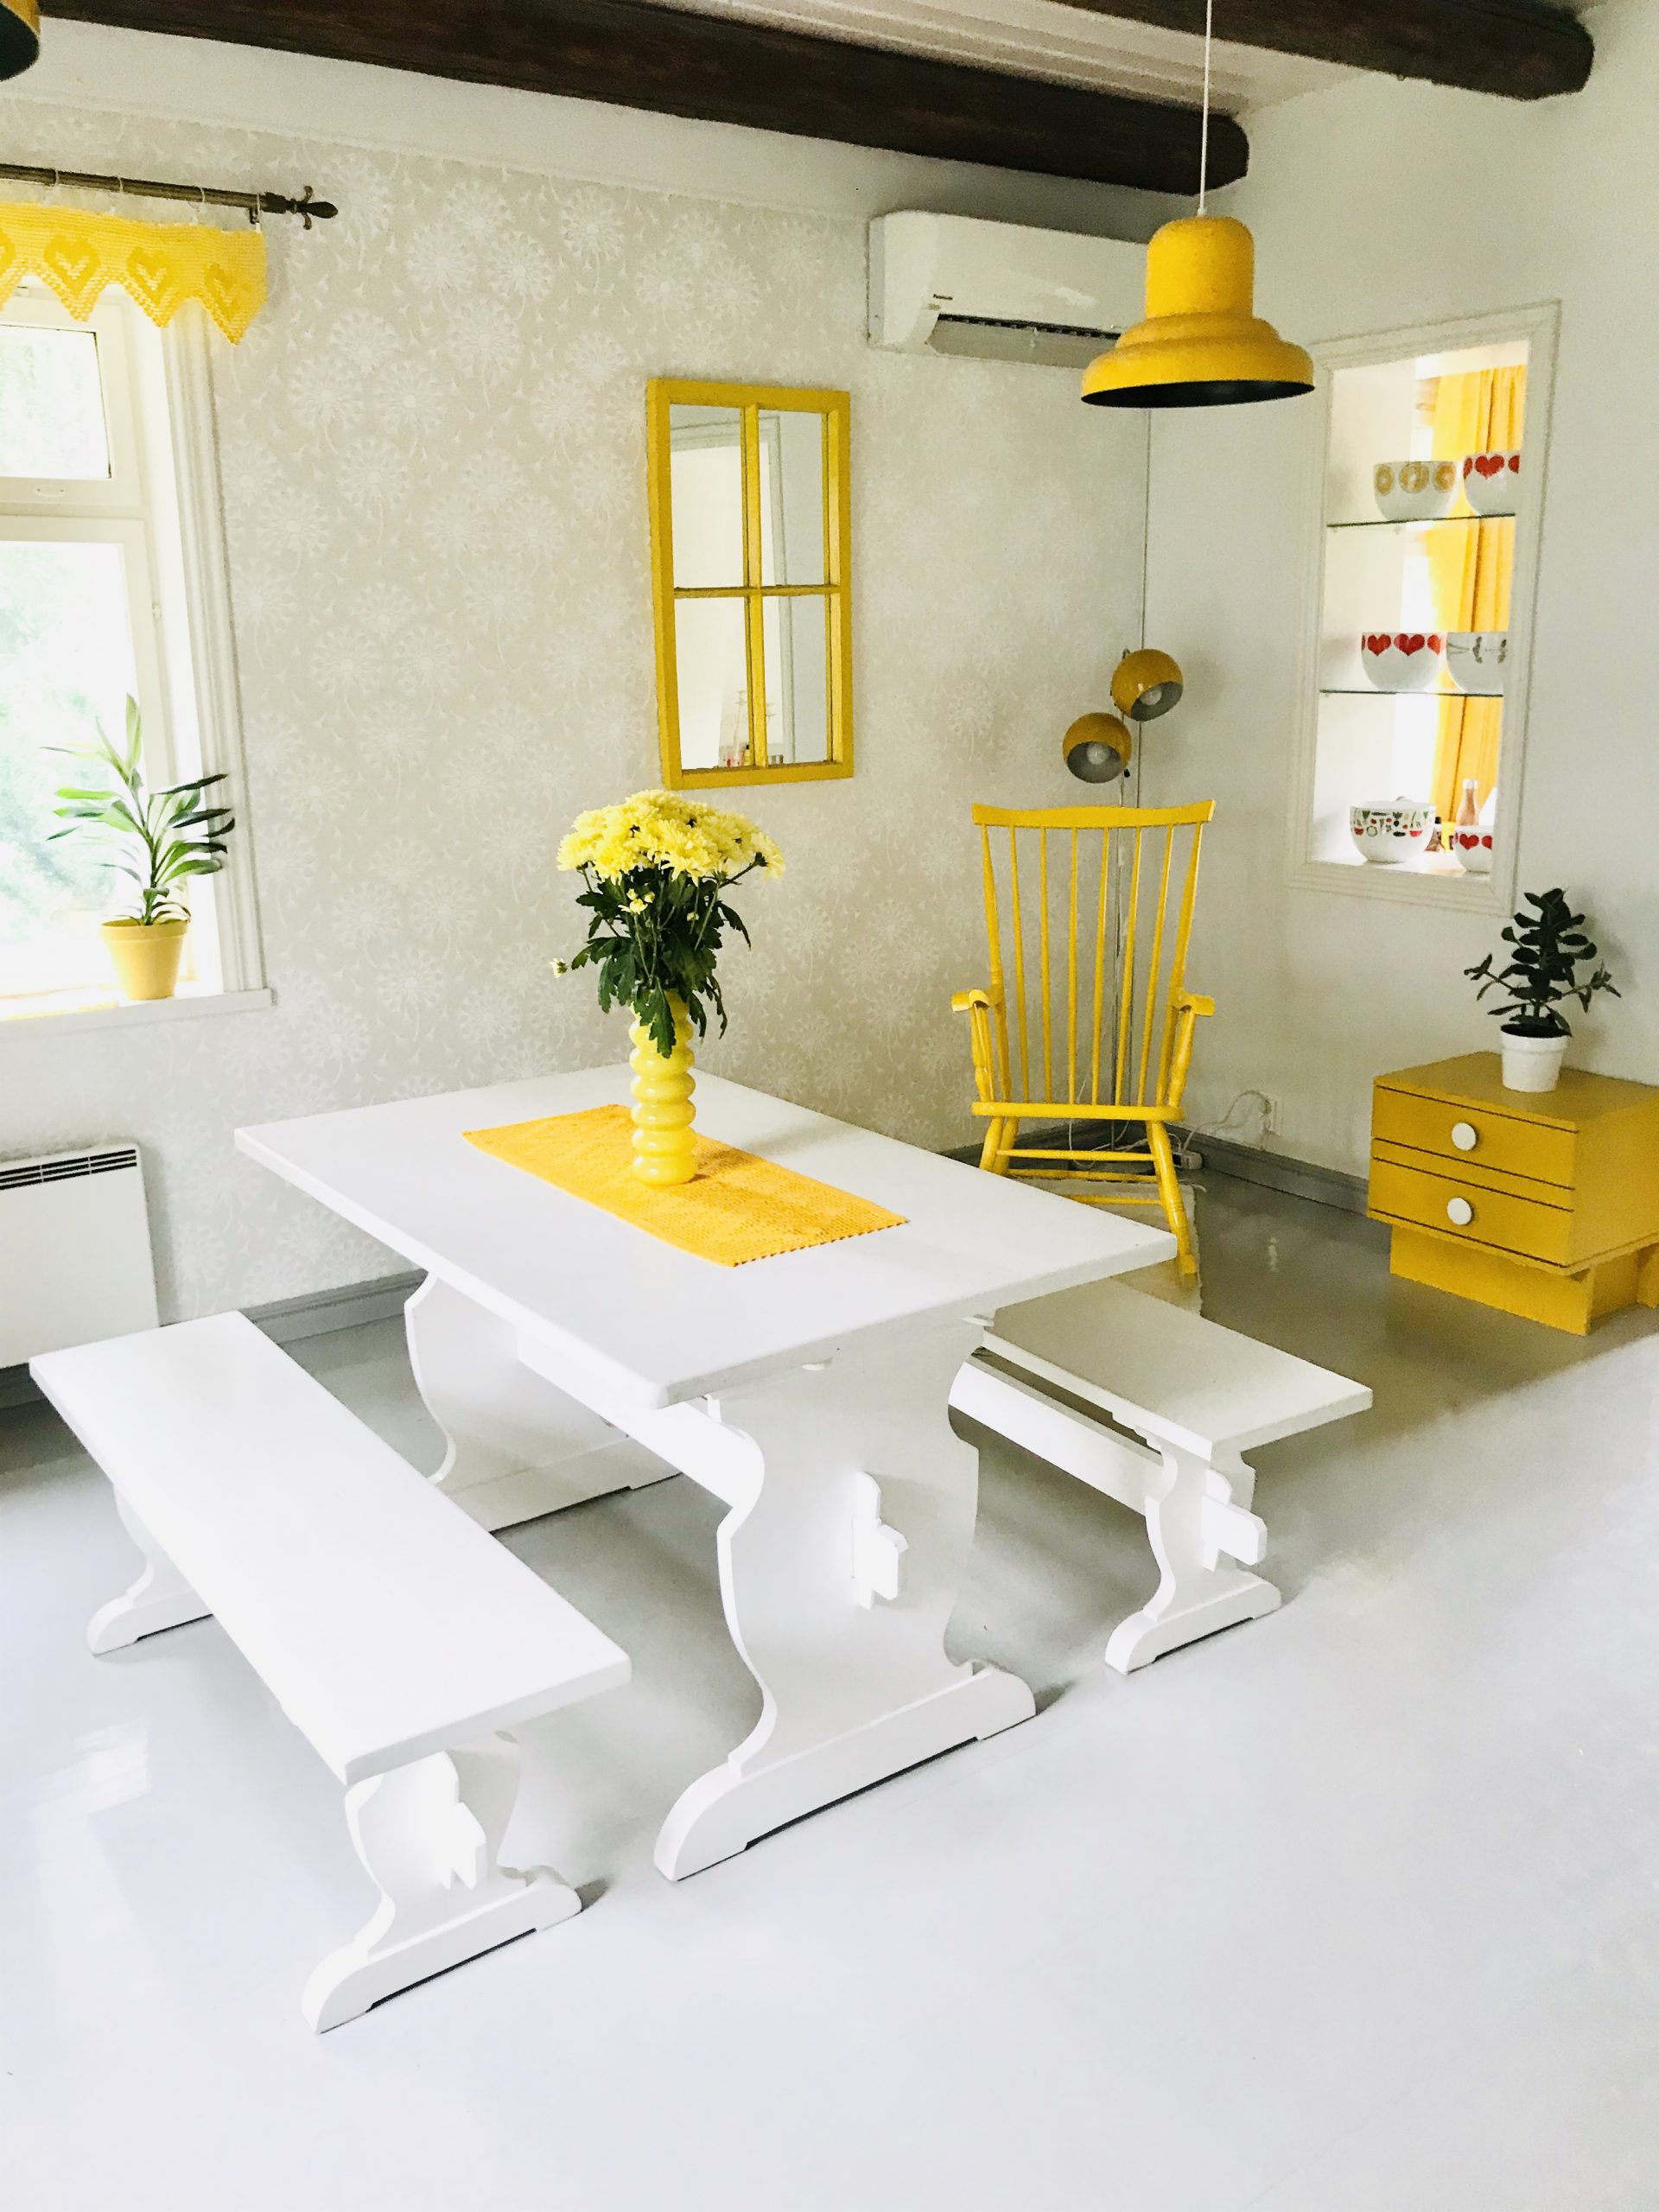 Elluyellow keltainen retro keittiö